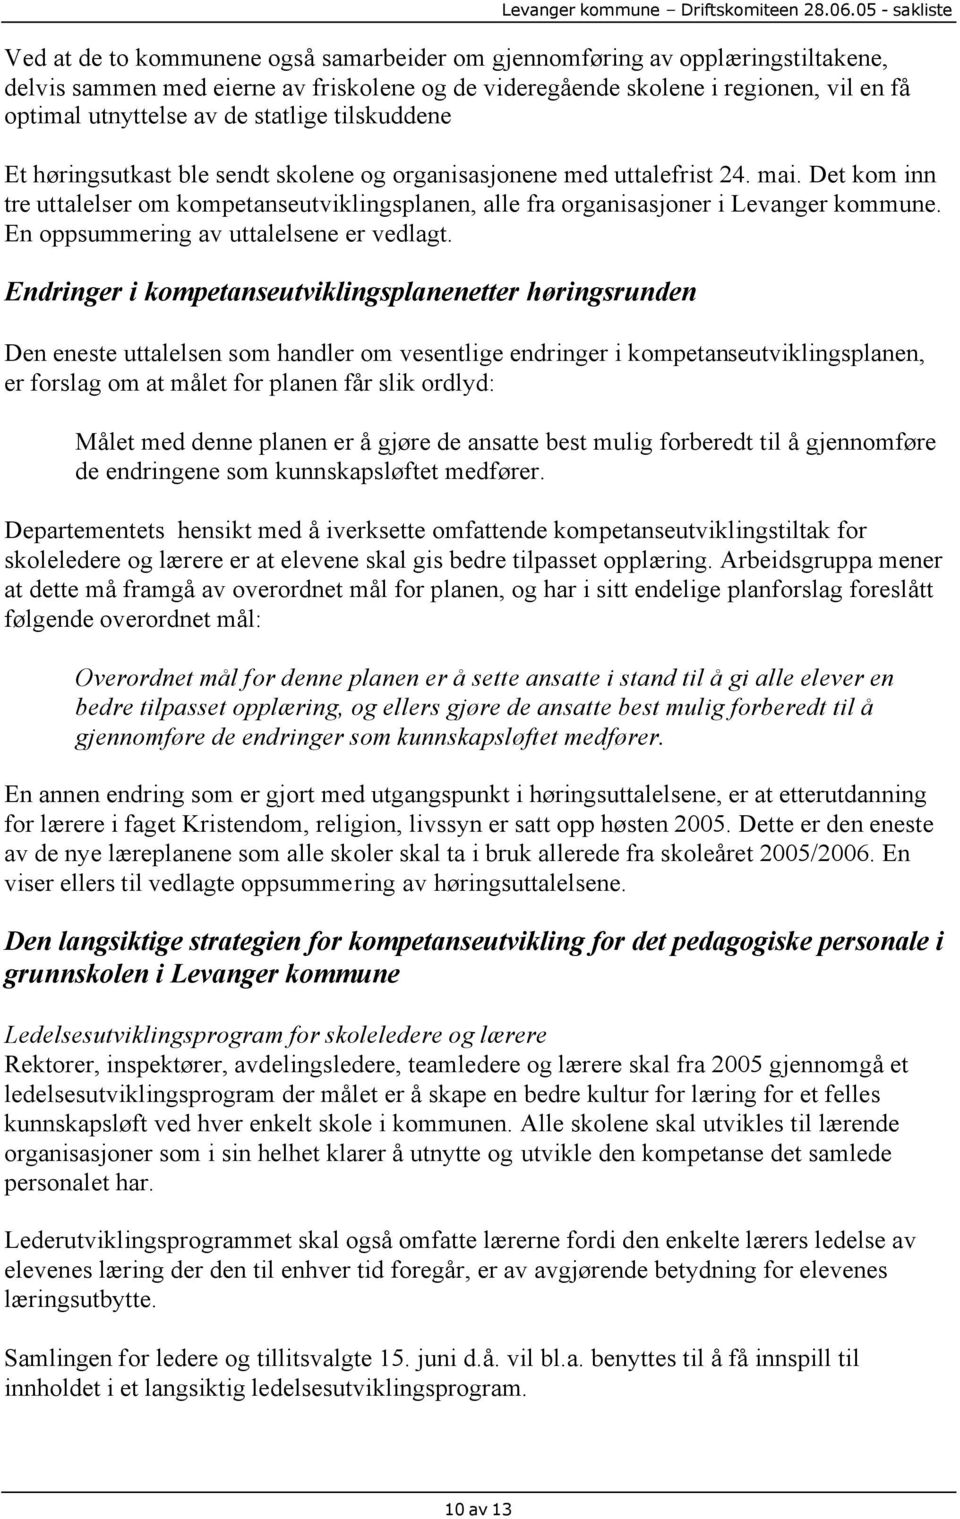 Det kom inn tre uttalelser om kompetanseutviklingsplanen, alle fra organisasjoner i Levanger kommune. En oppsummering av uttalelsene er vedlagt.